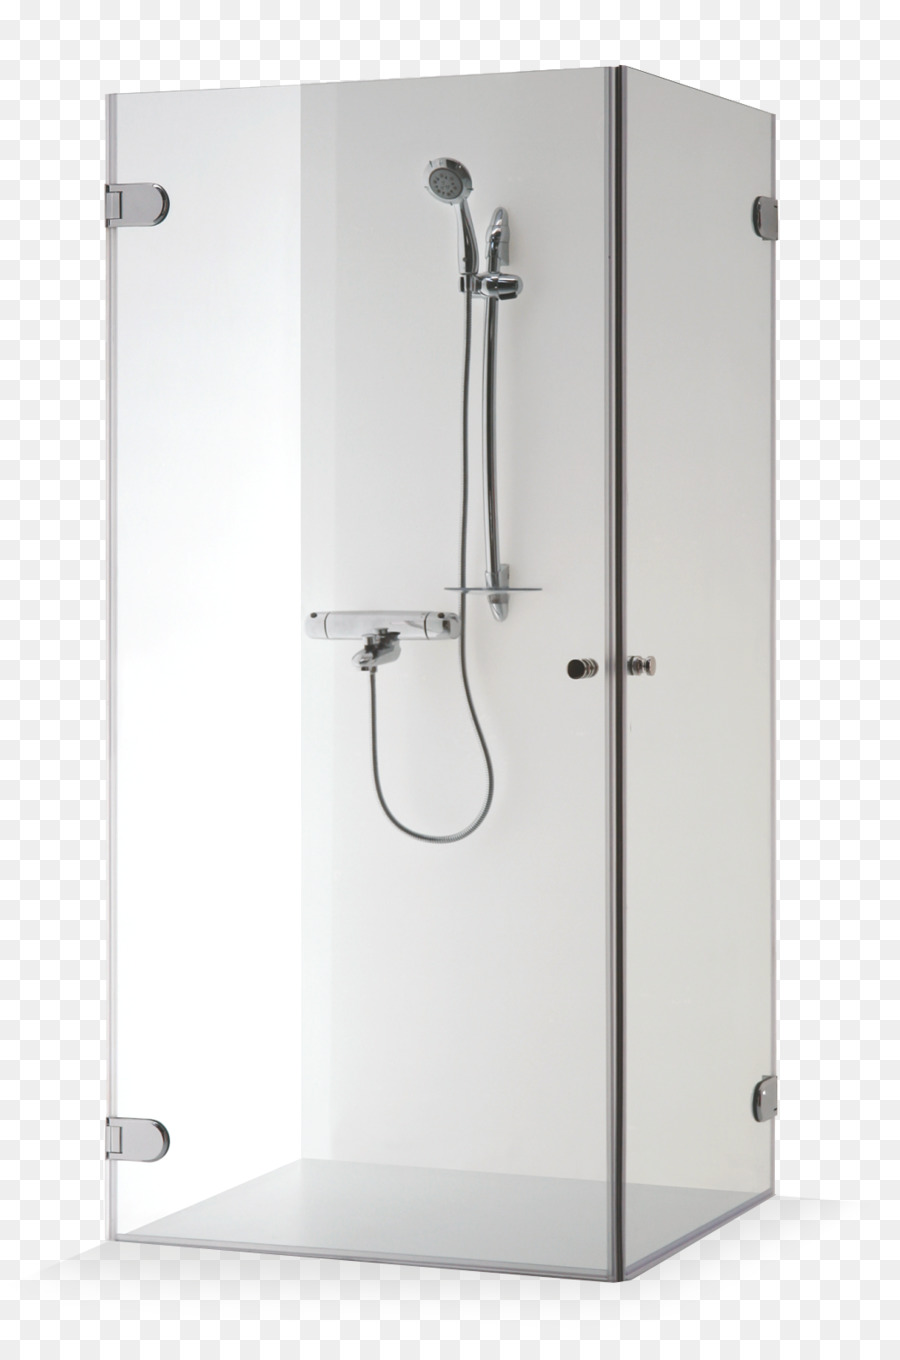 Shower Bathroom RAVAK Wall - shower png download - 1064*1594 - Free Transparent Shower png Download.